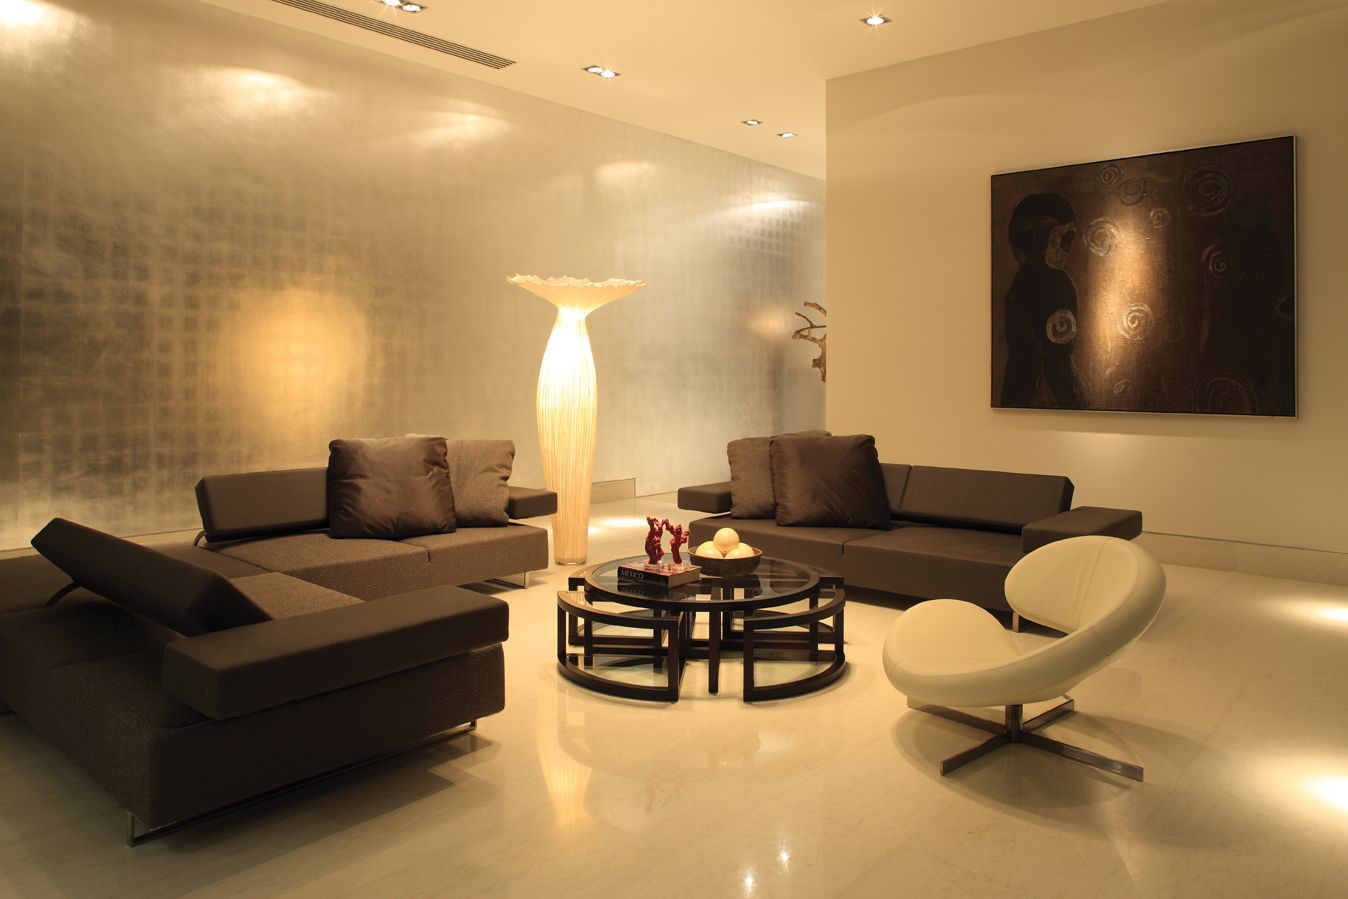 Main Living Room Lighting Ideas Tips Interior Design Inspirations